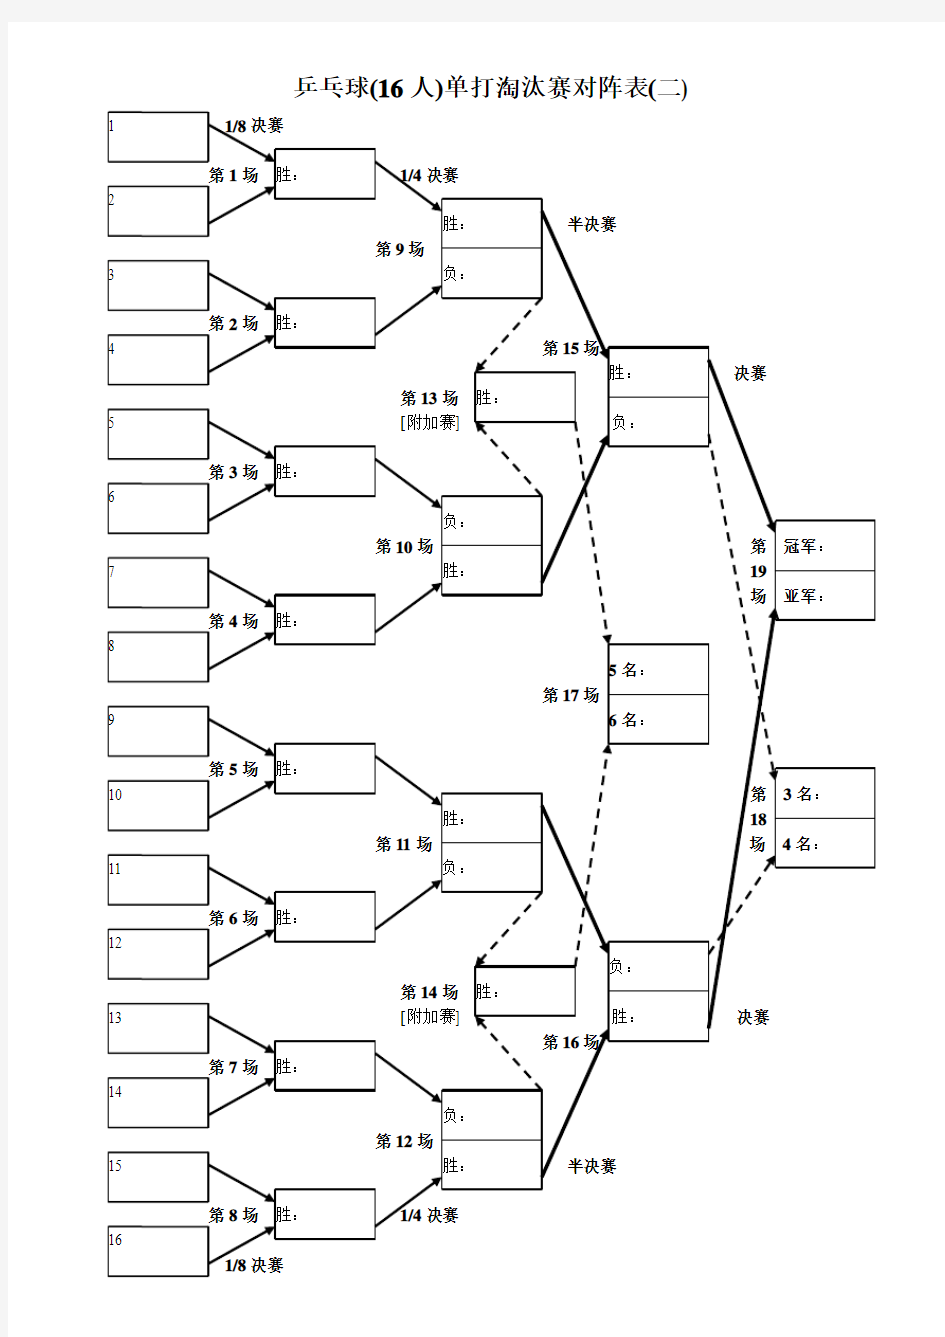 乒乓球(16人)单打淘汰赛对阵表(二)